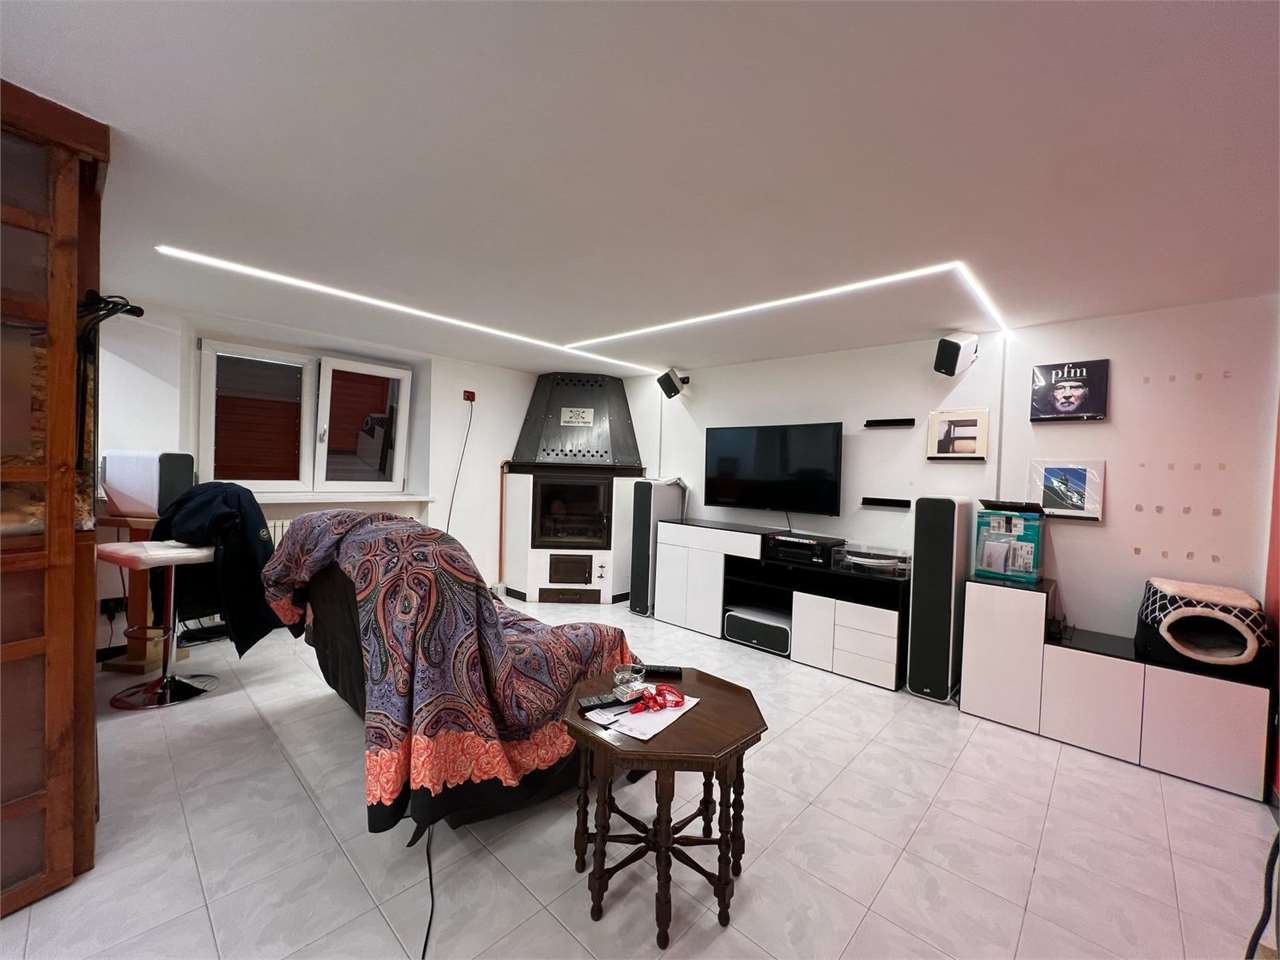 Appartamento in vendita a Spoleto, 3 locali, prezzo € 95.000 | PortaleAgenzieImmobiliari.it